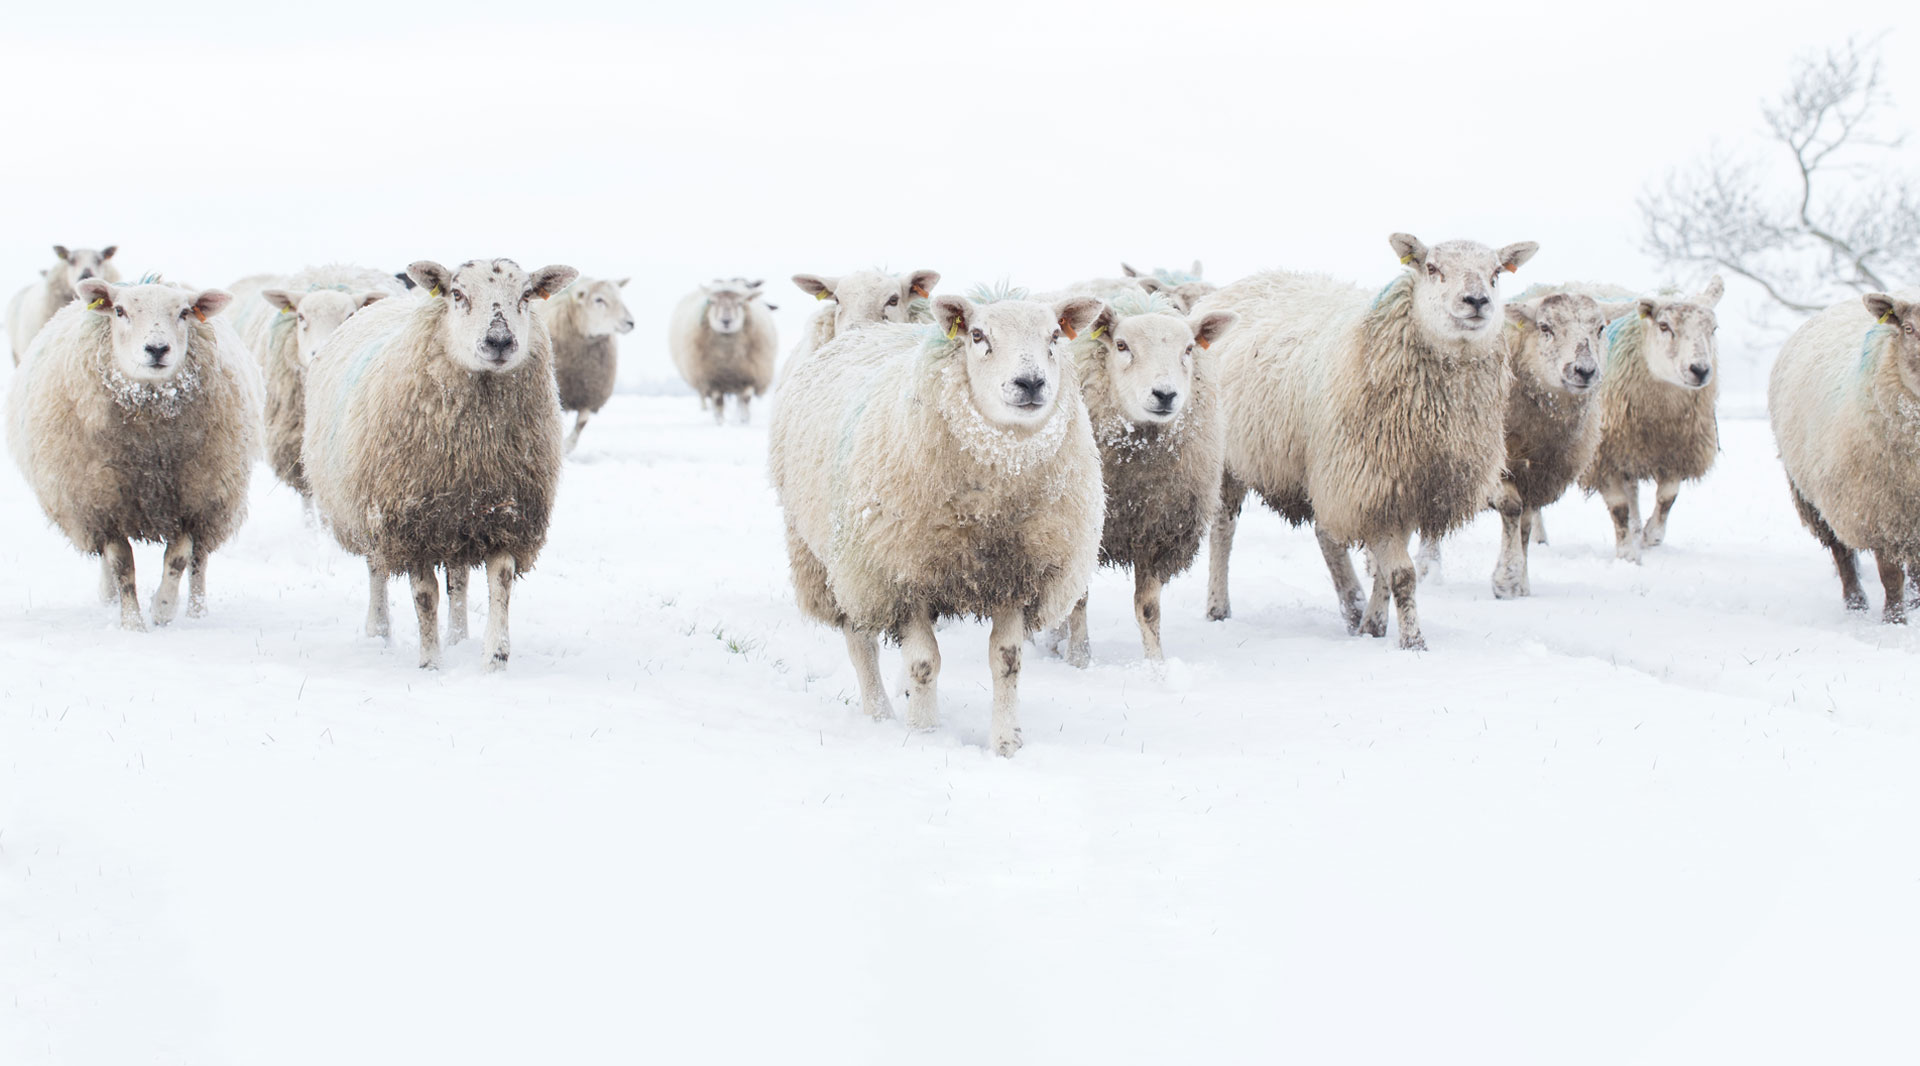 Sheep in snowy field